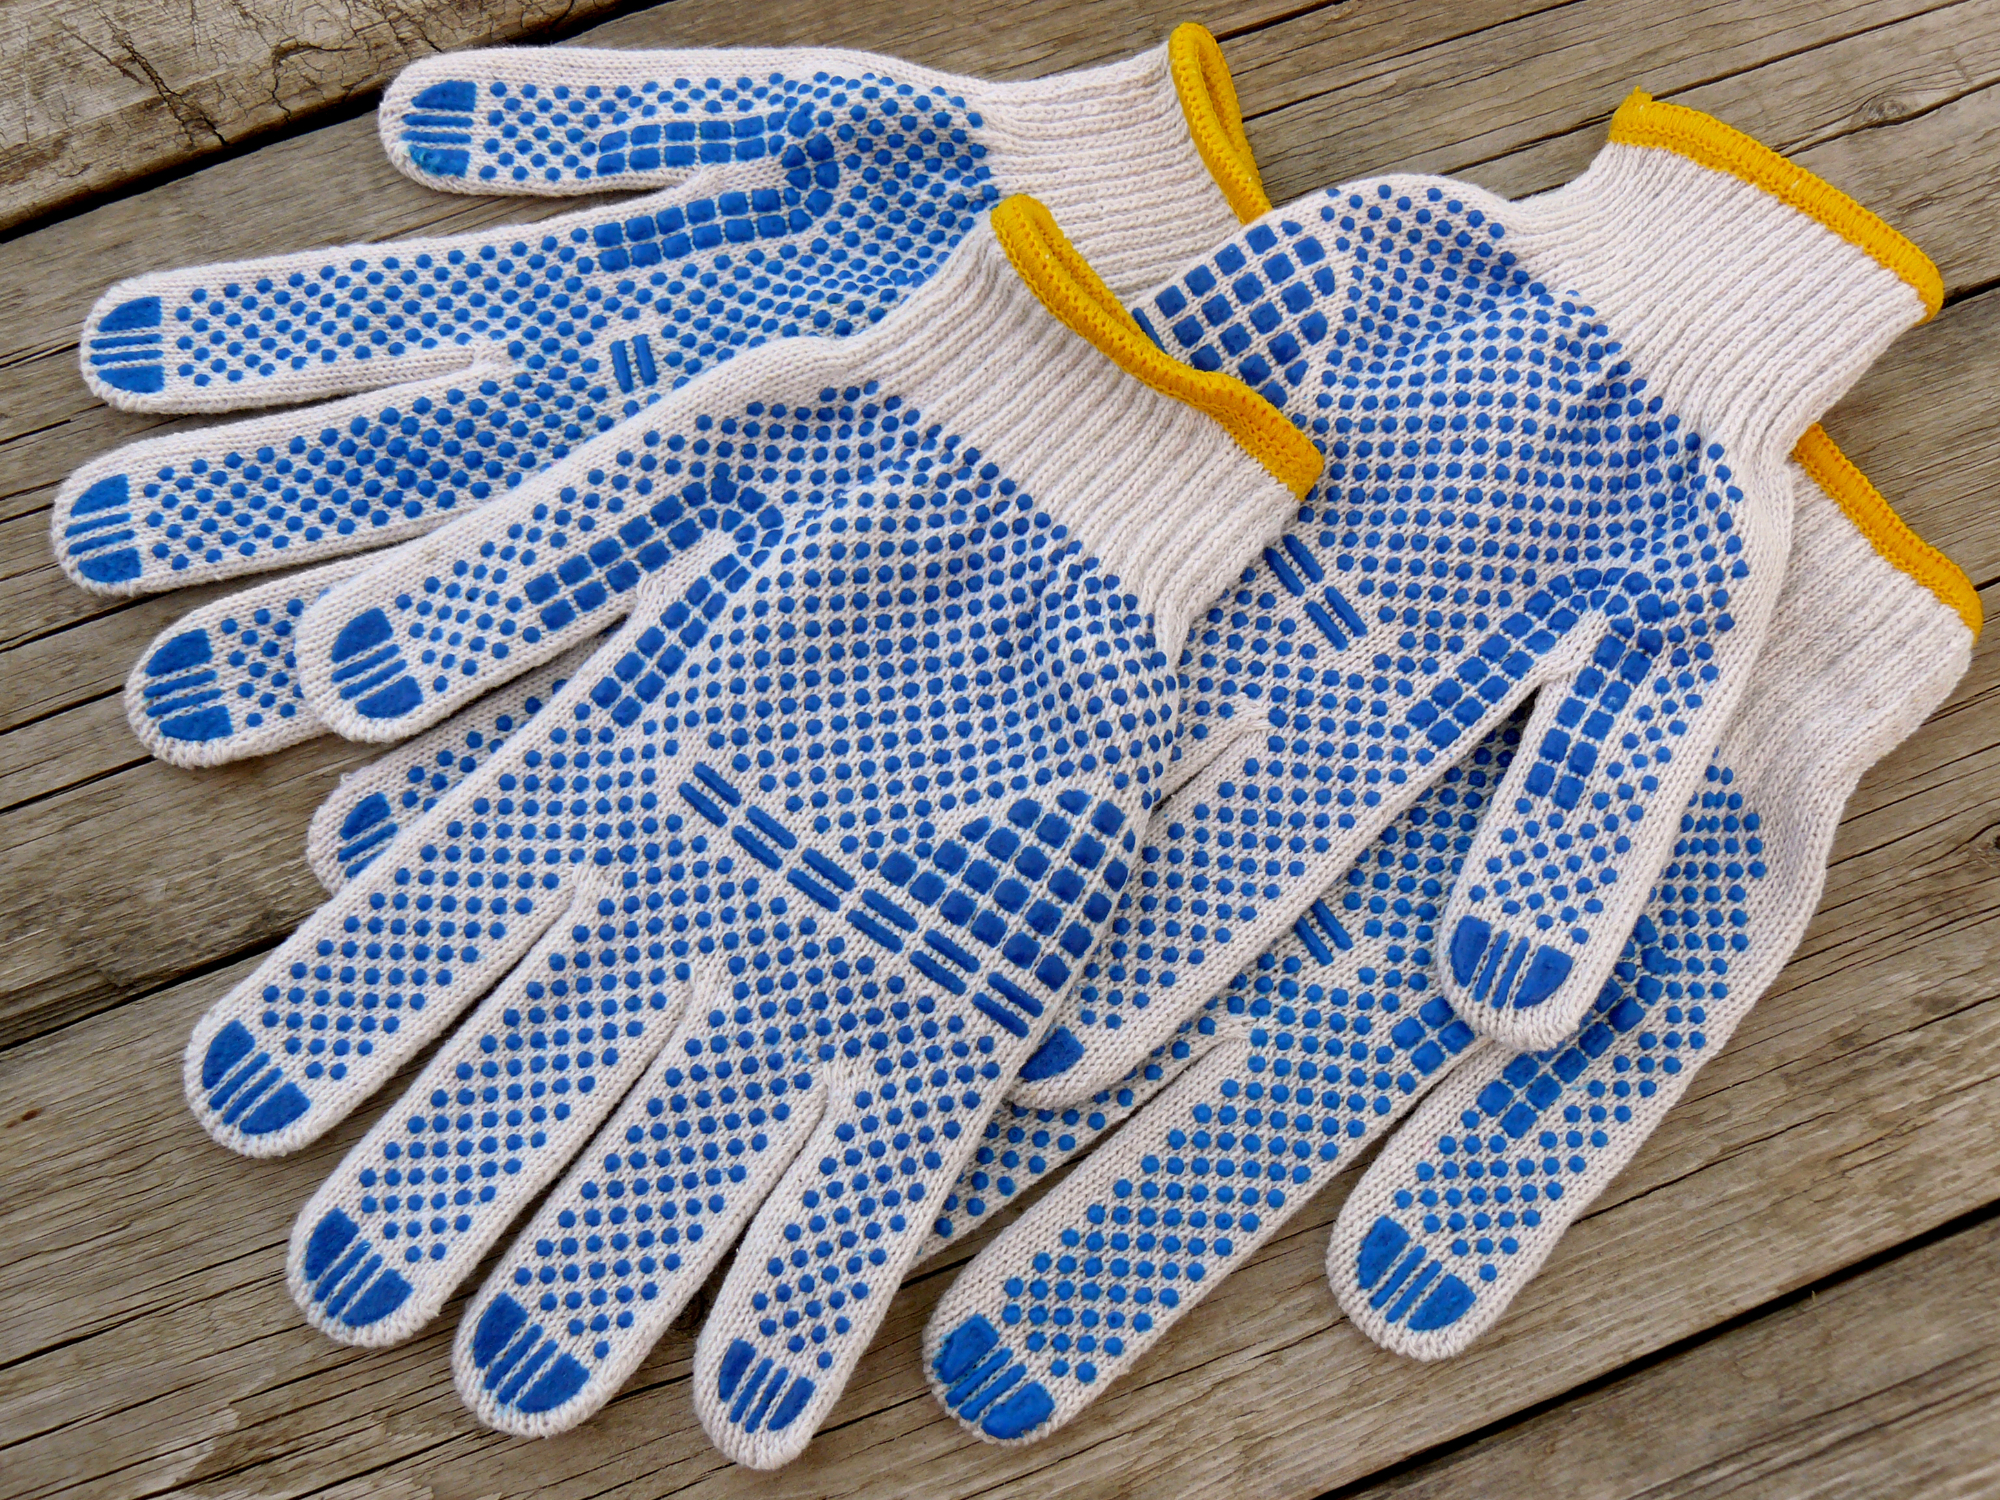 Če se zaščitne rokavice redno uporabljajo, je to zelo dobro za kožo na rokah